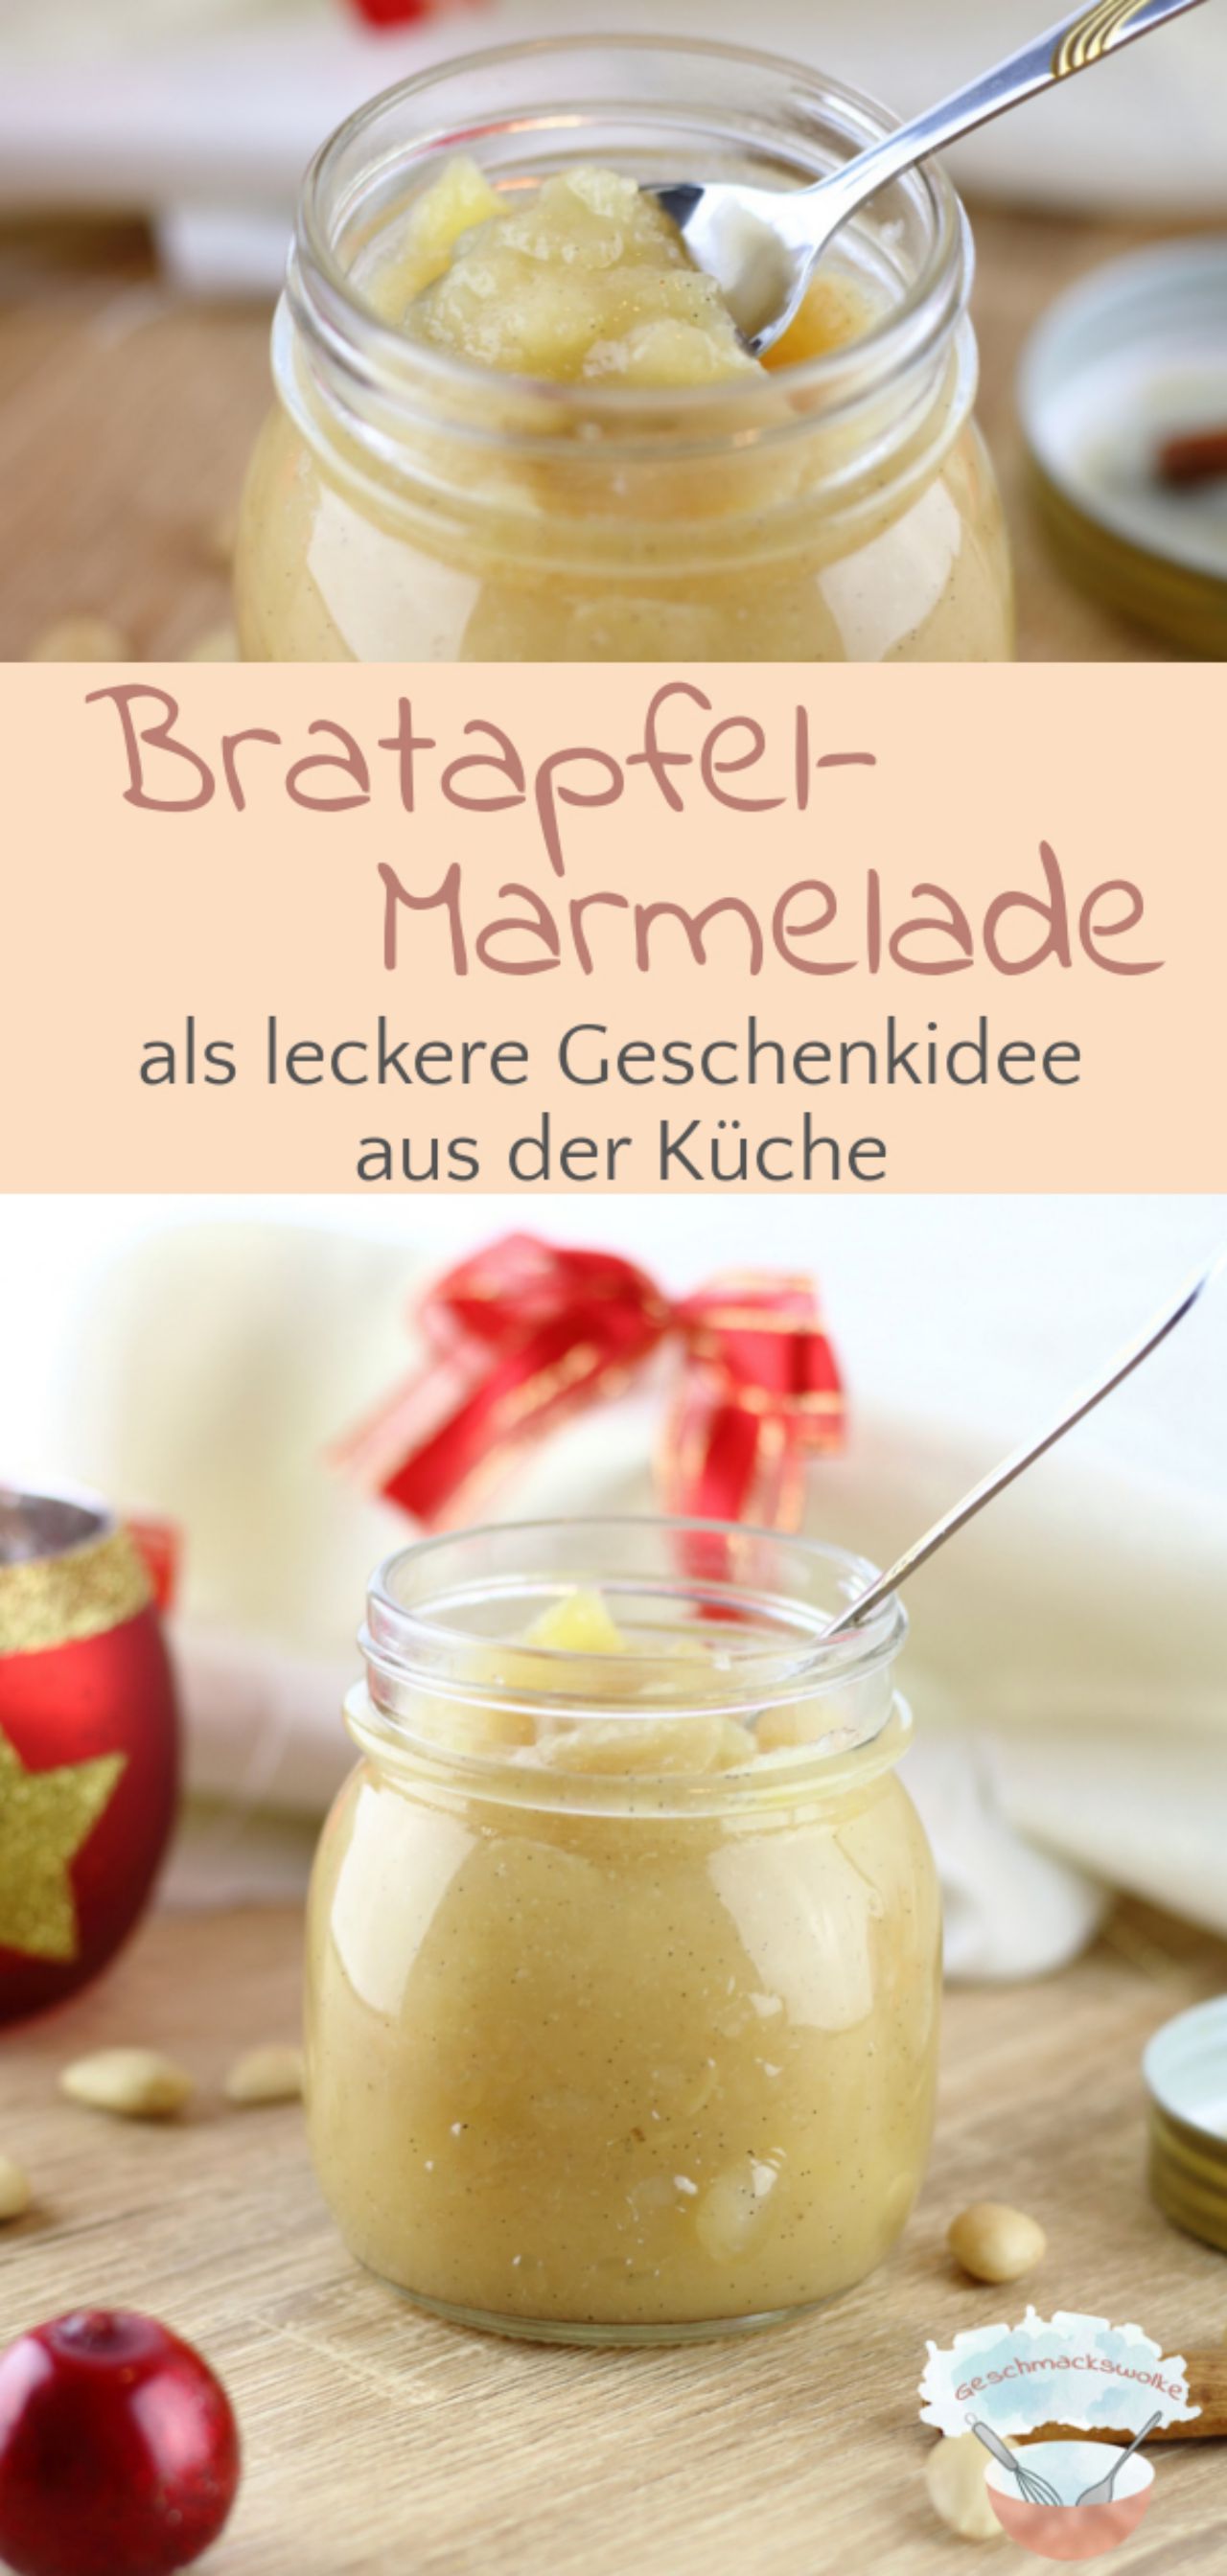 Winterliche Bratapfel-Marmelade als Geschenk aus der Küche - #bratapfelmarmelade #bratapfel #marmelade #apfelaufstrich #küchengeschenk #frühstück #winterrezept